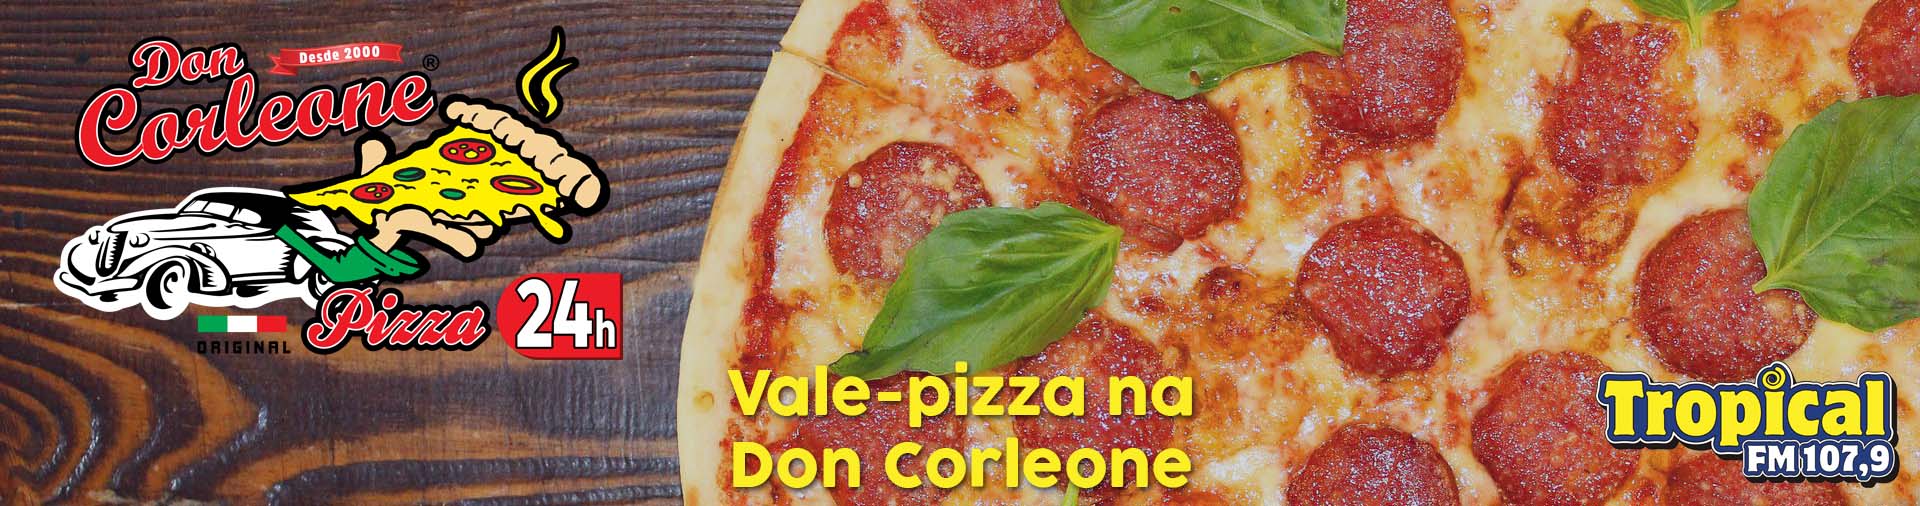 Banner Vale-pizza da Don Corleone